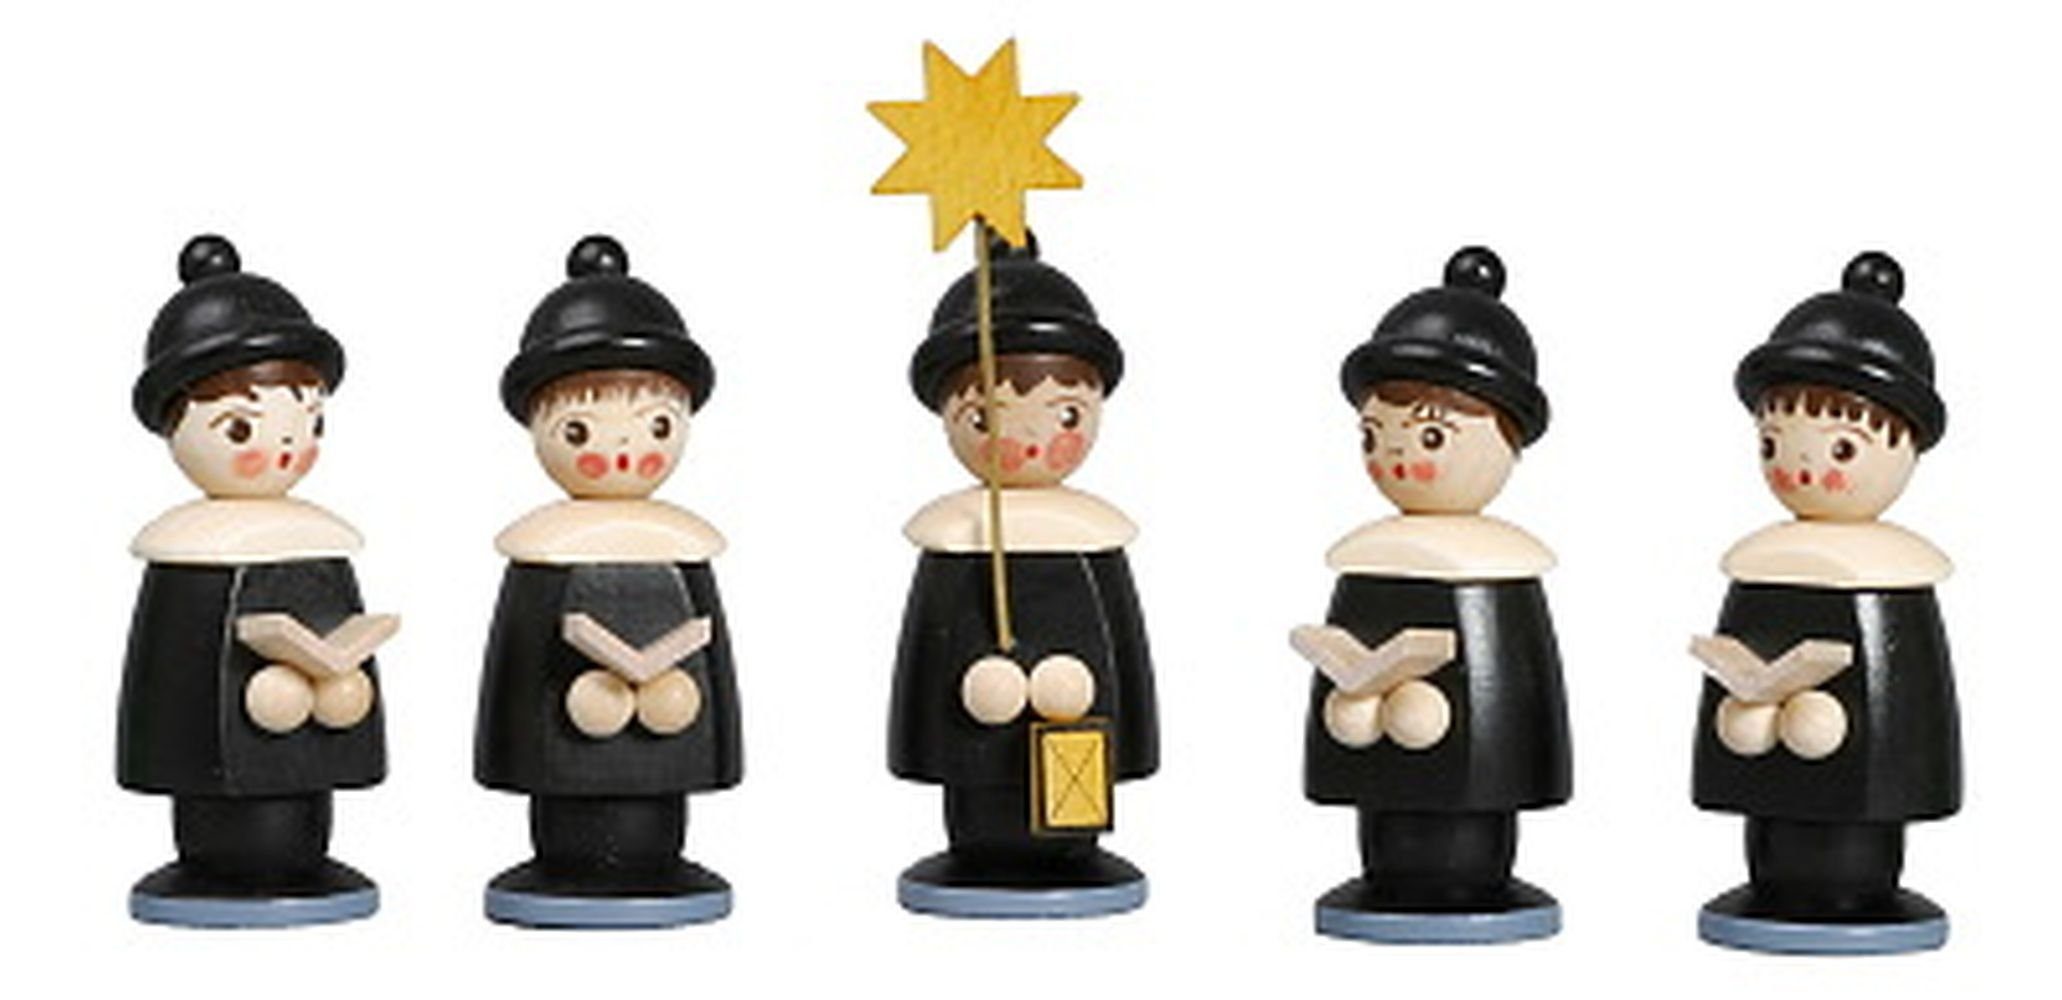 Sammelfigur Miniaturfiguren 5 Kurrendefiguren schwarz Höhe 6,2cm NEU